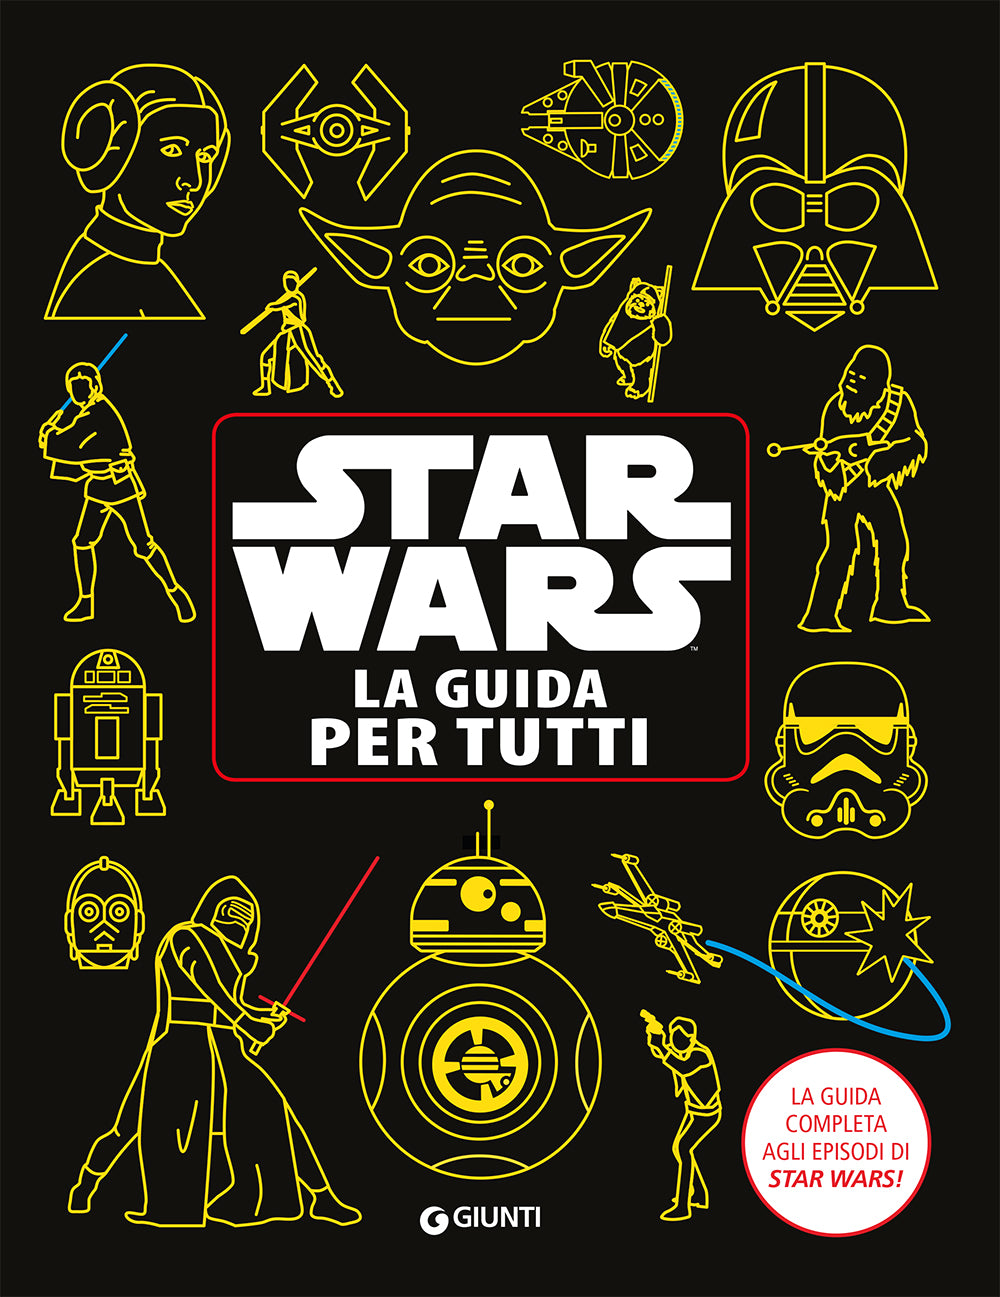 Enciclopedia dei Personaggi - Star Wars. La guida per tutti. Il manuale completo agli episodi di Star Wars!